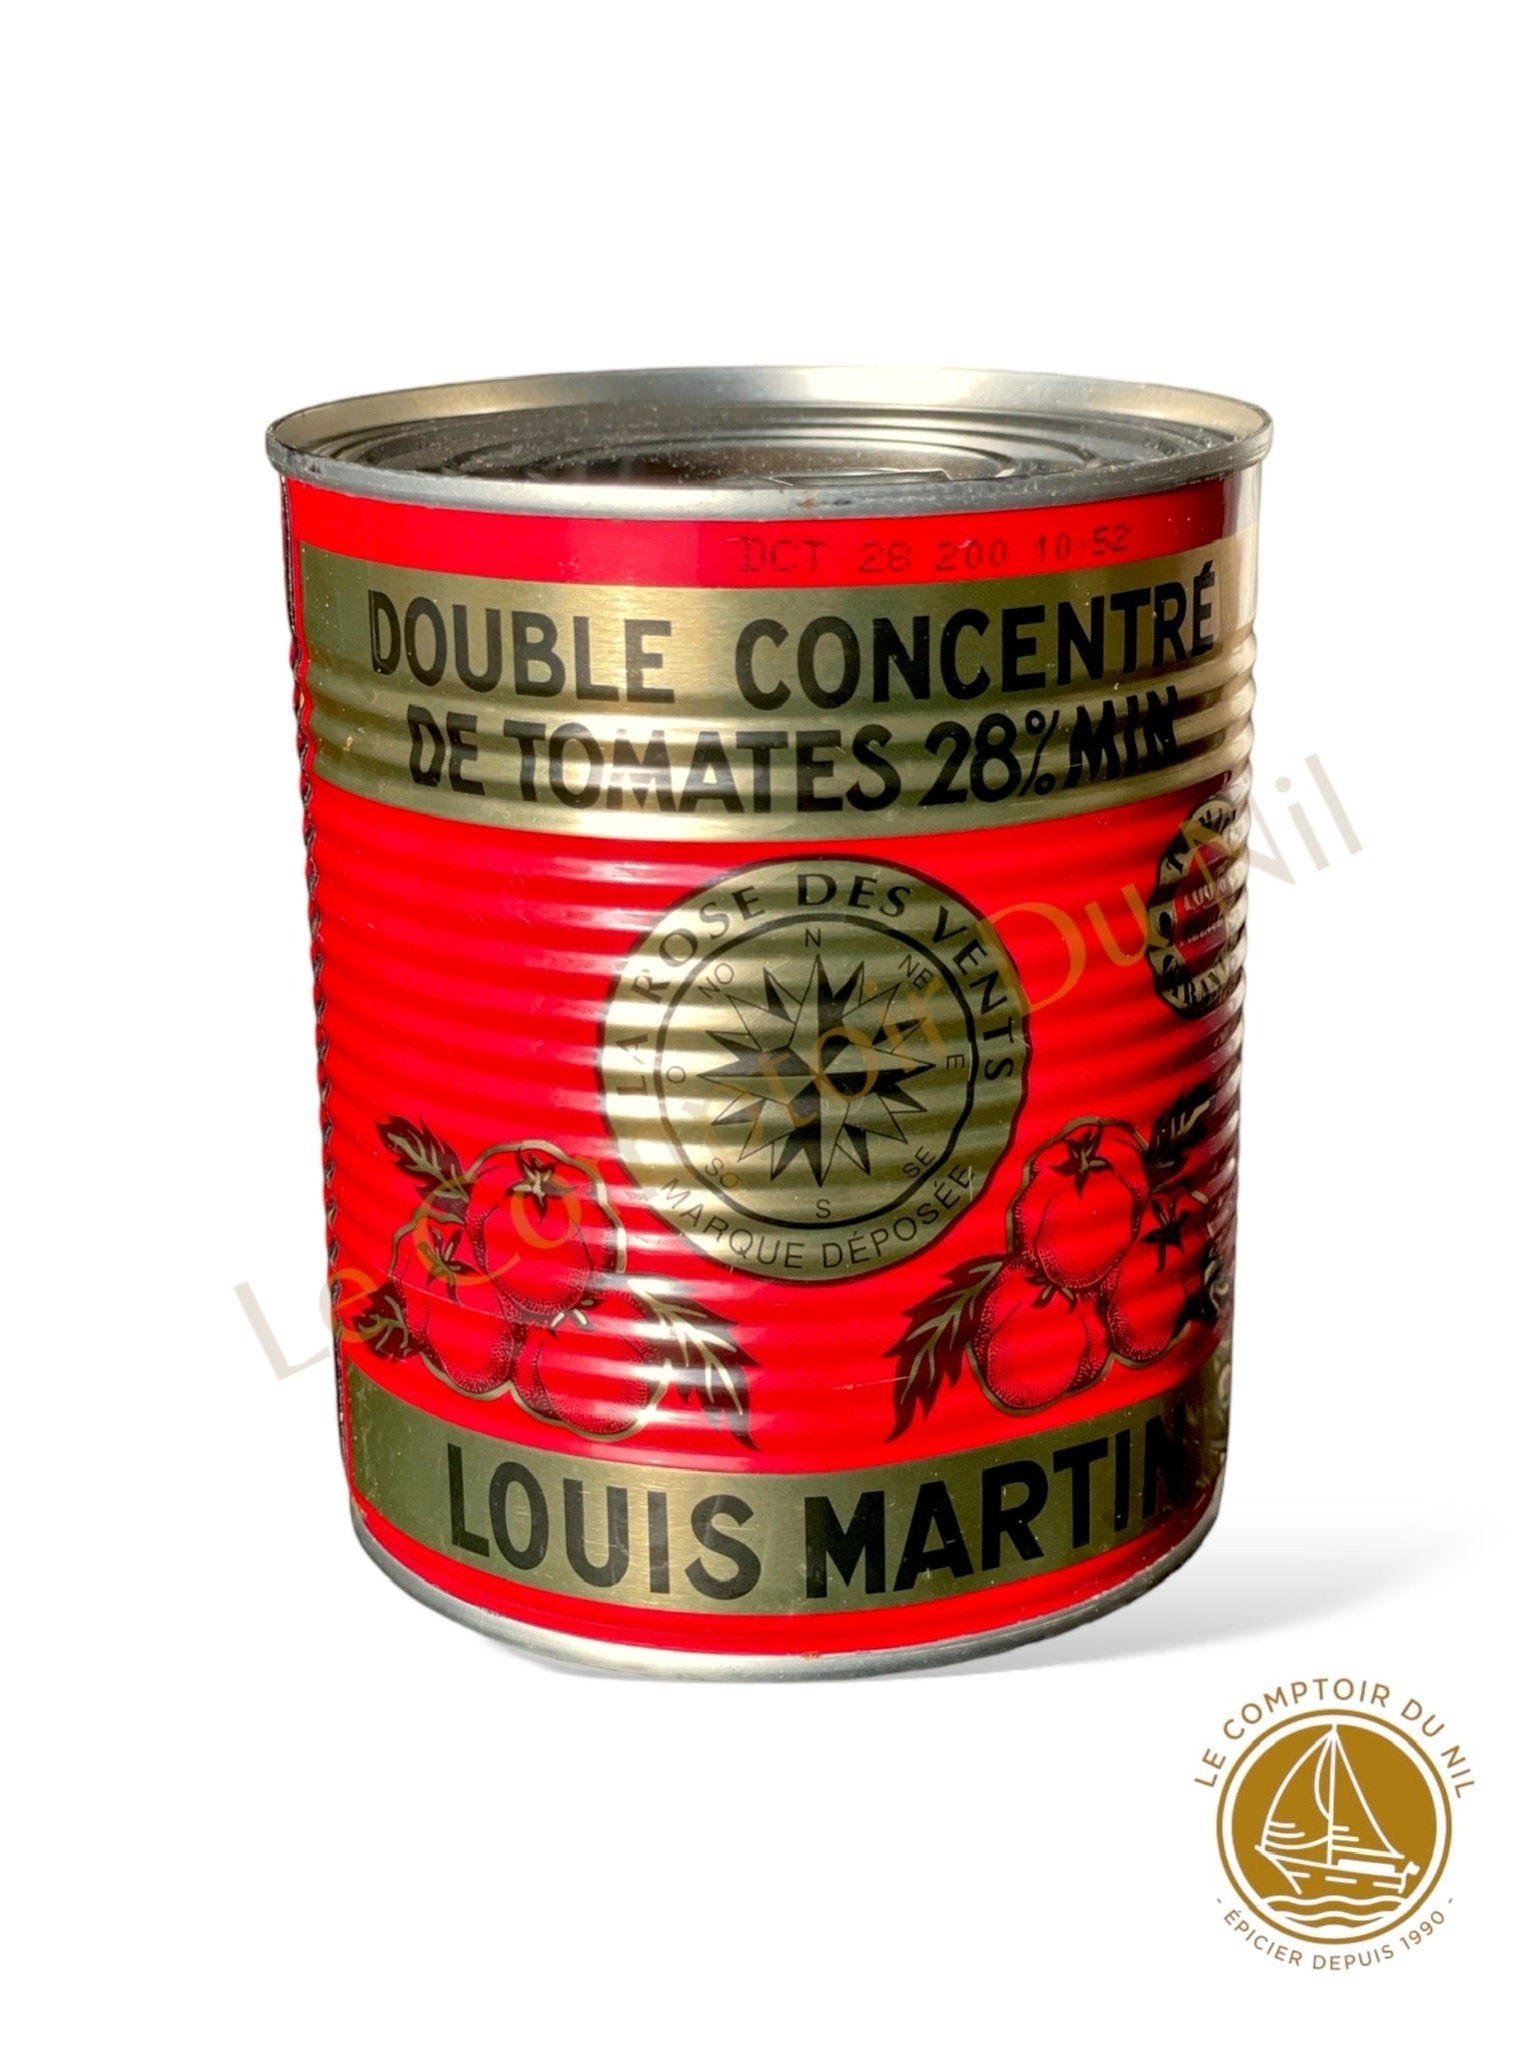 LOUIS MARTIN - Double concentré de tomate 28% min